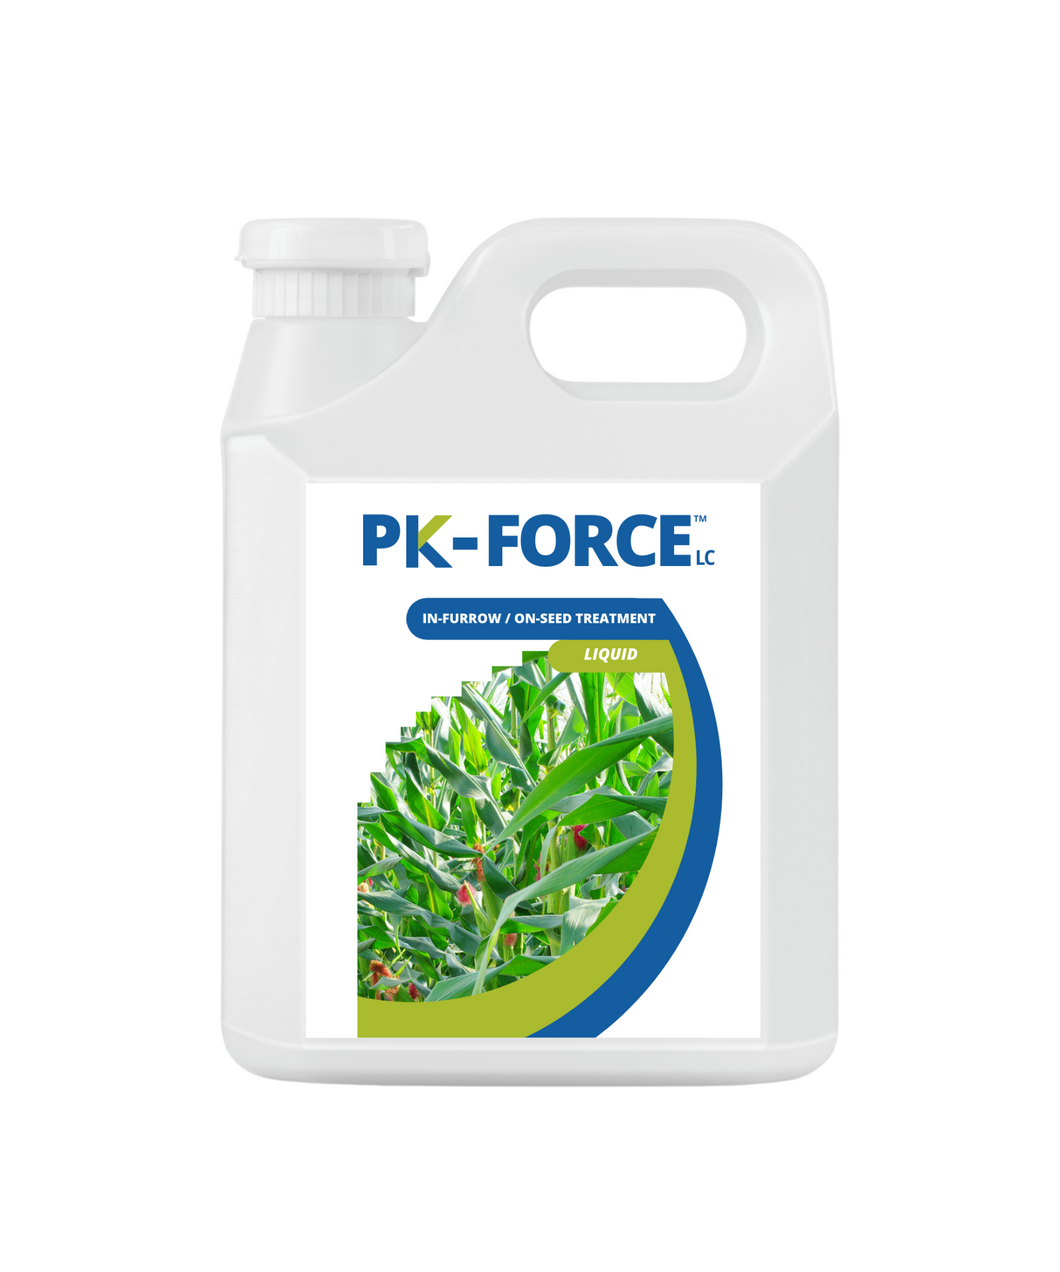 PK-FORCE LC™ PHOSPHORUS/POTASSIUM INOCULANT - LIQUID CONCENTRATE